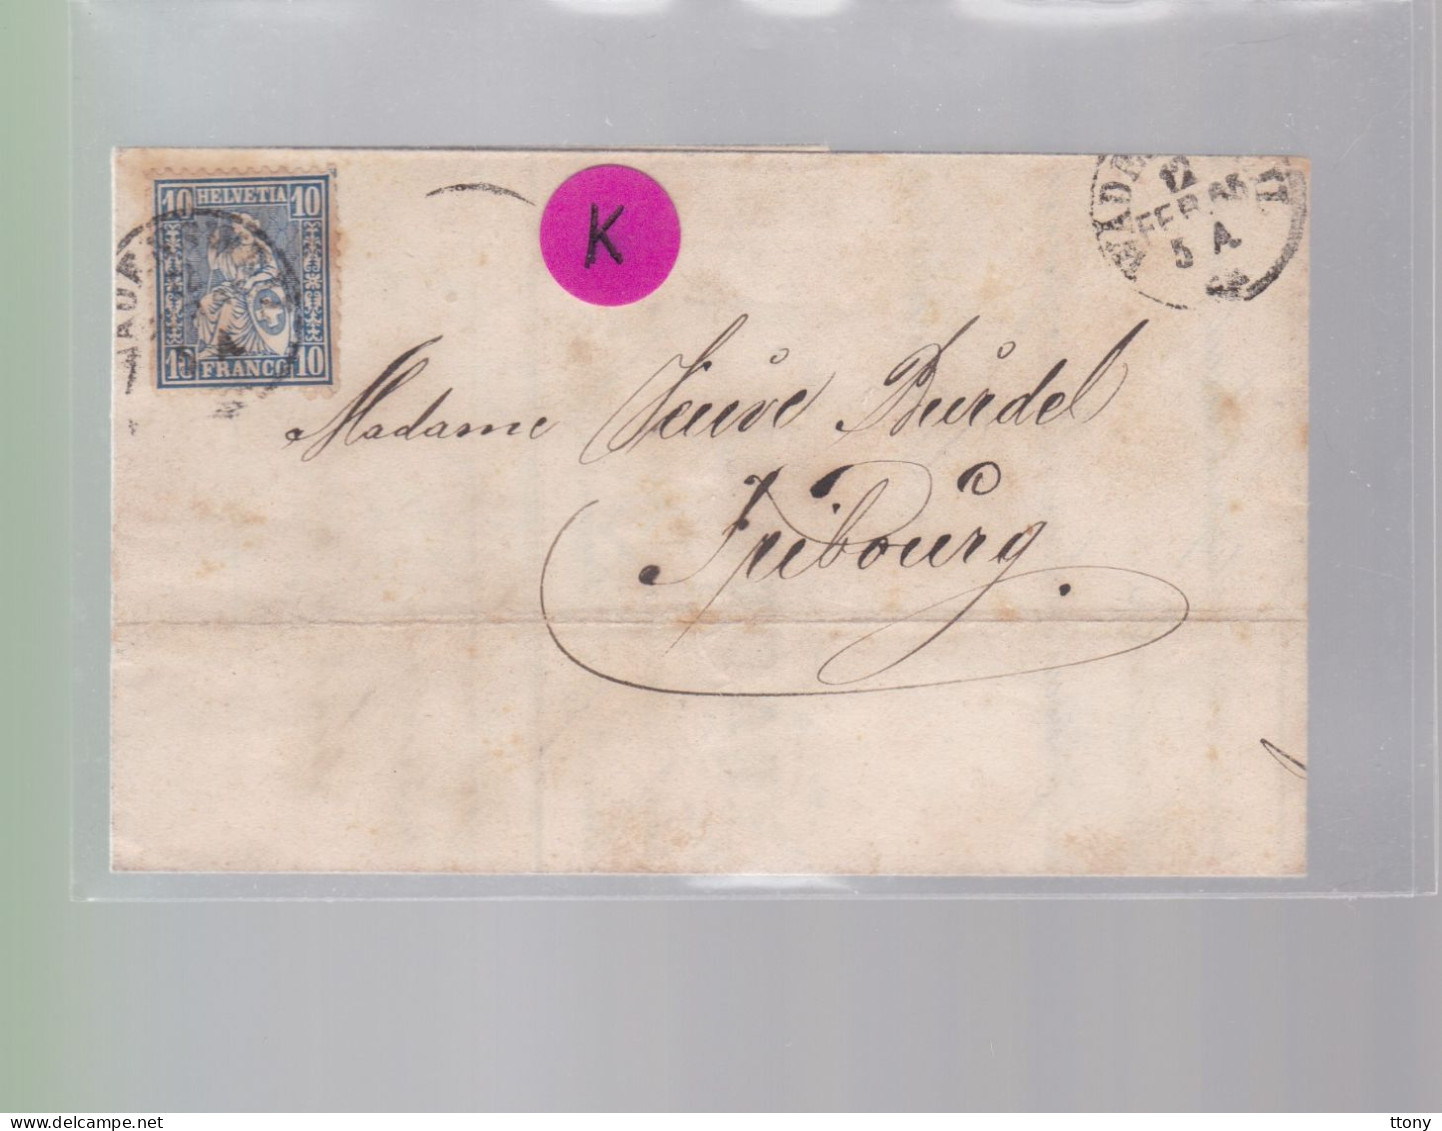 Un Timbre N° 31  10 C  Franco  Suisse  Sur Lettre   Facture  Wadenschweil    Février  1865   Destination Fribourg - Lettres & Documents